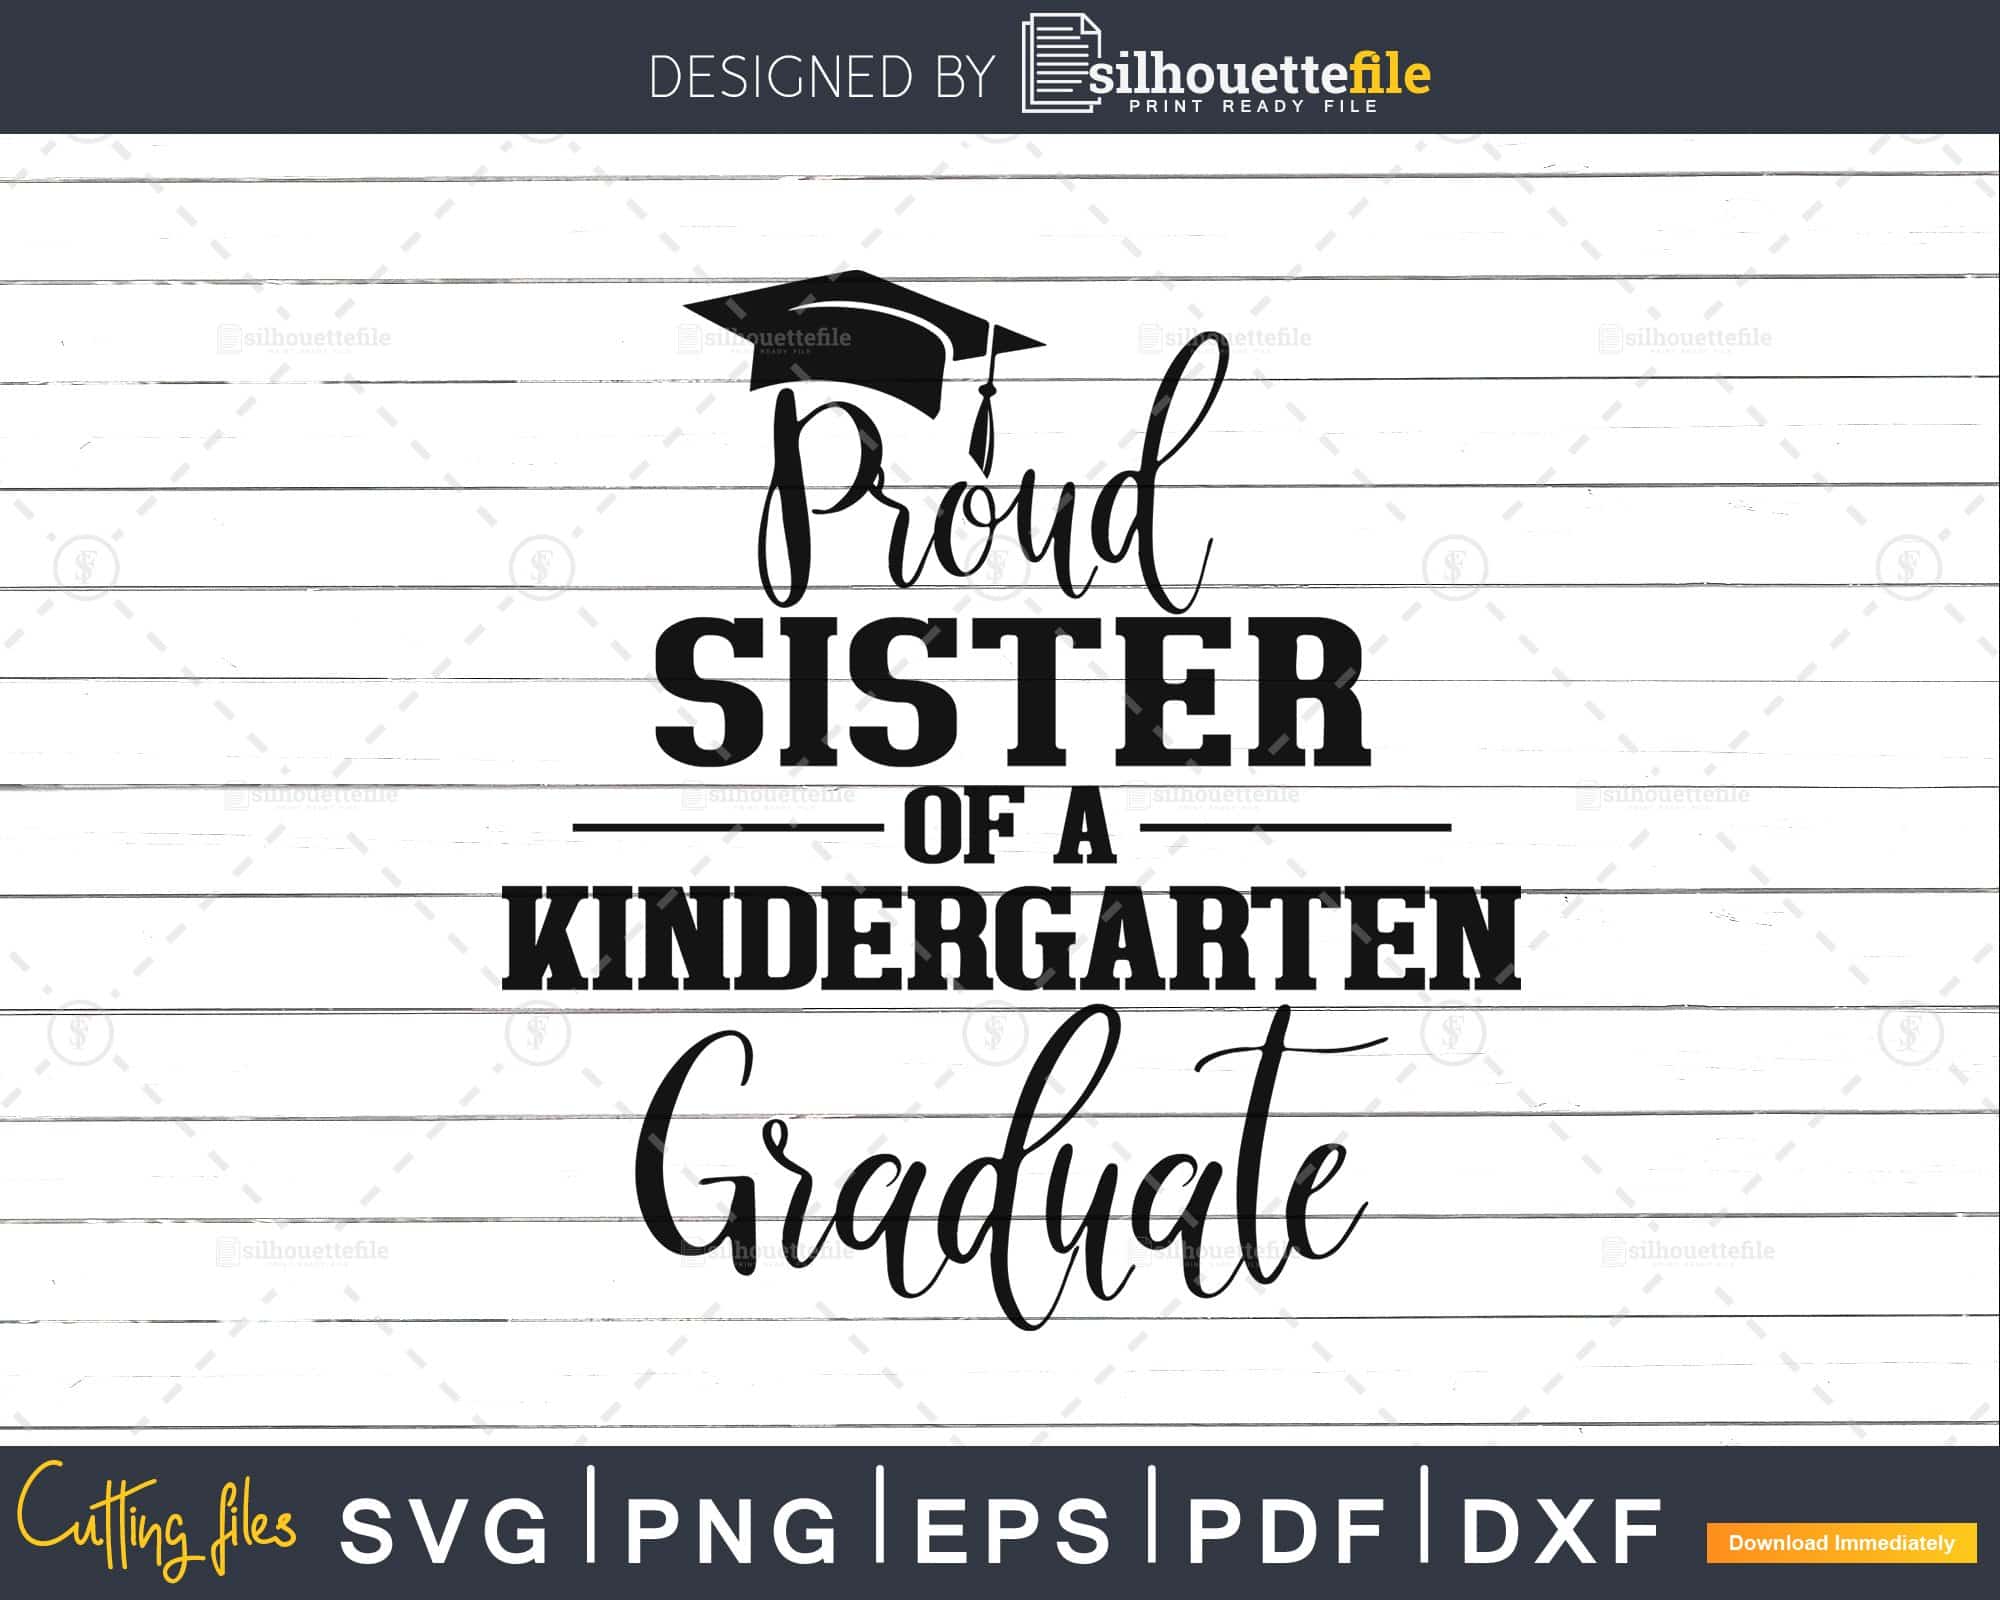 Free Free Kindergarten Graduation Svg Files 689 SVG PNG EPS DXF File